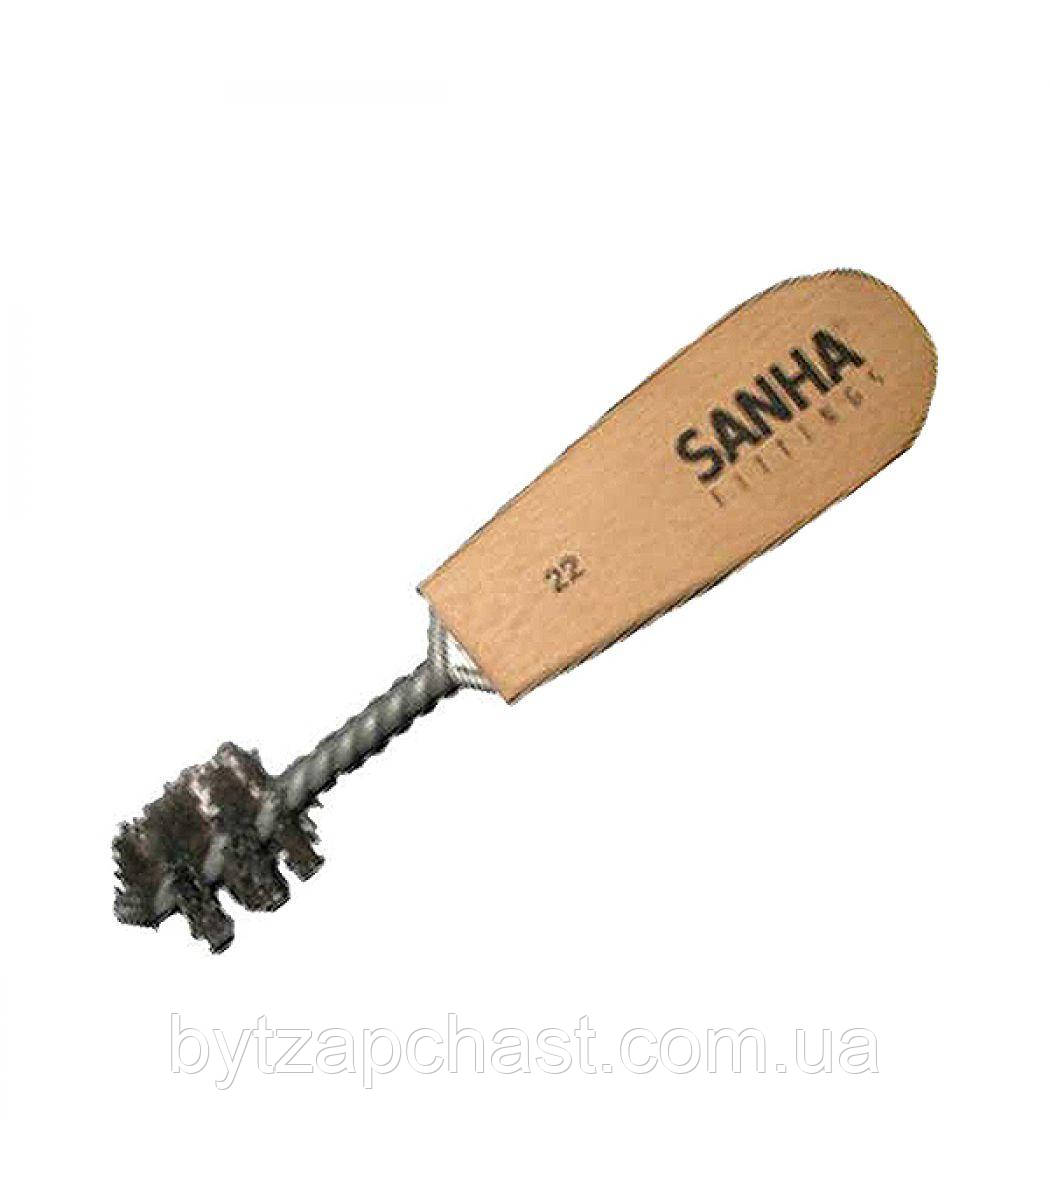 Йоршики Sanha для чищення мідних труб 12 мм